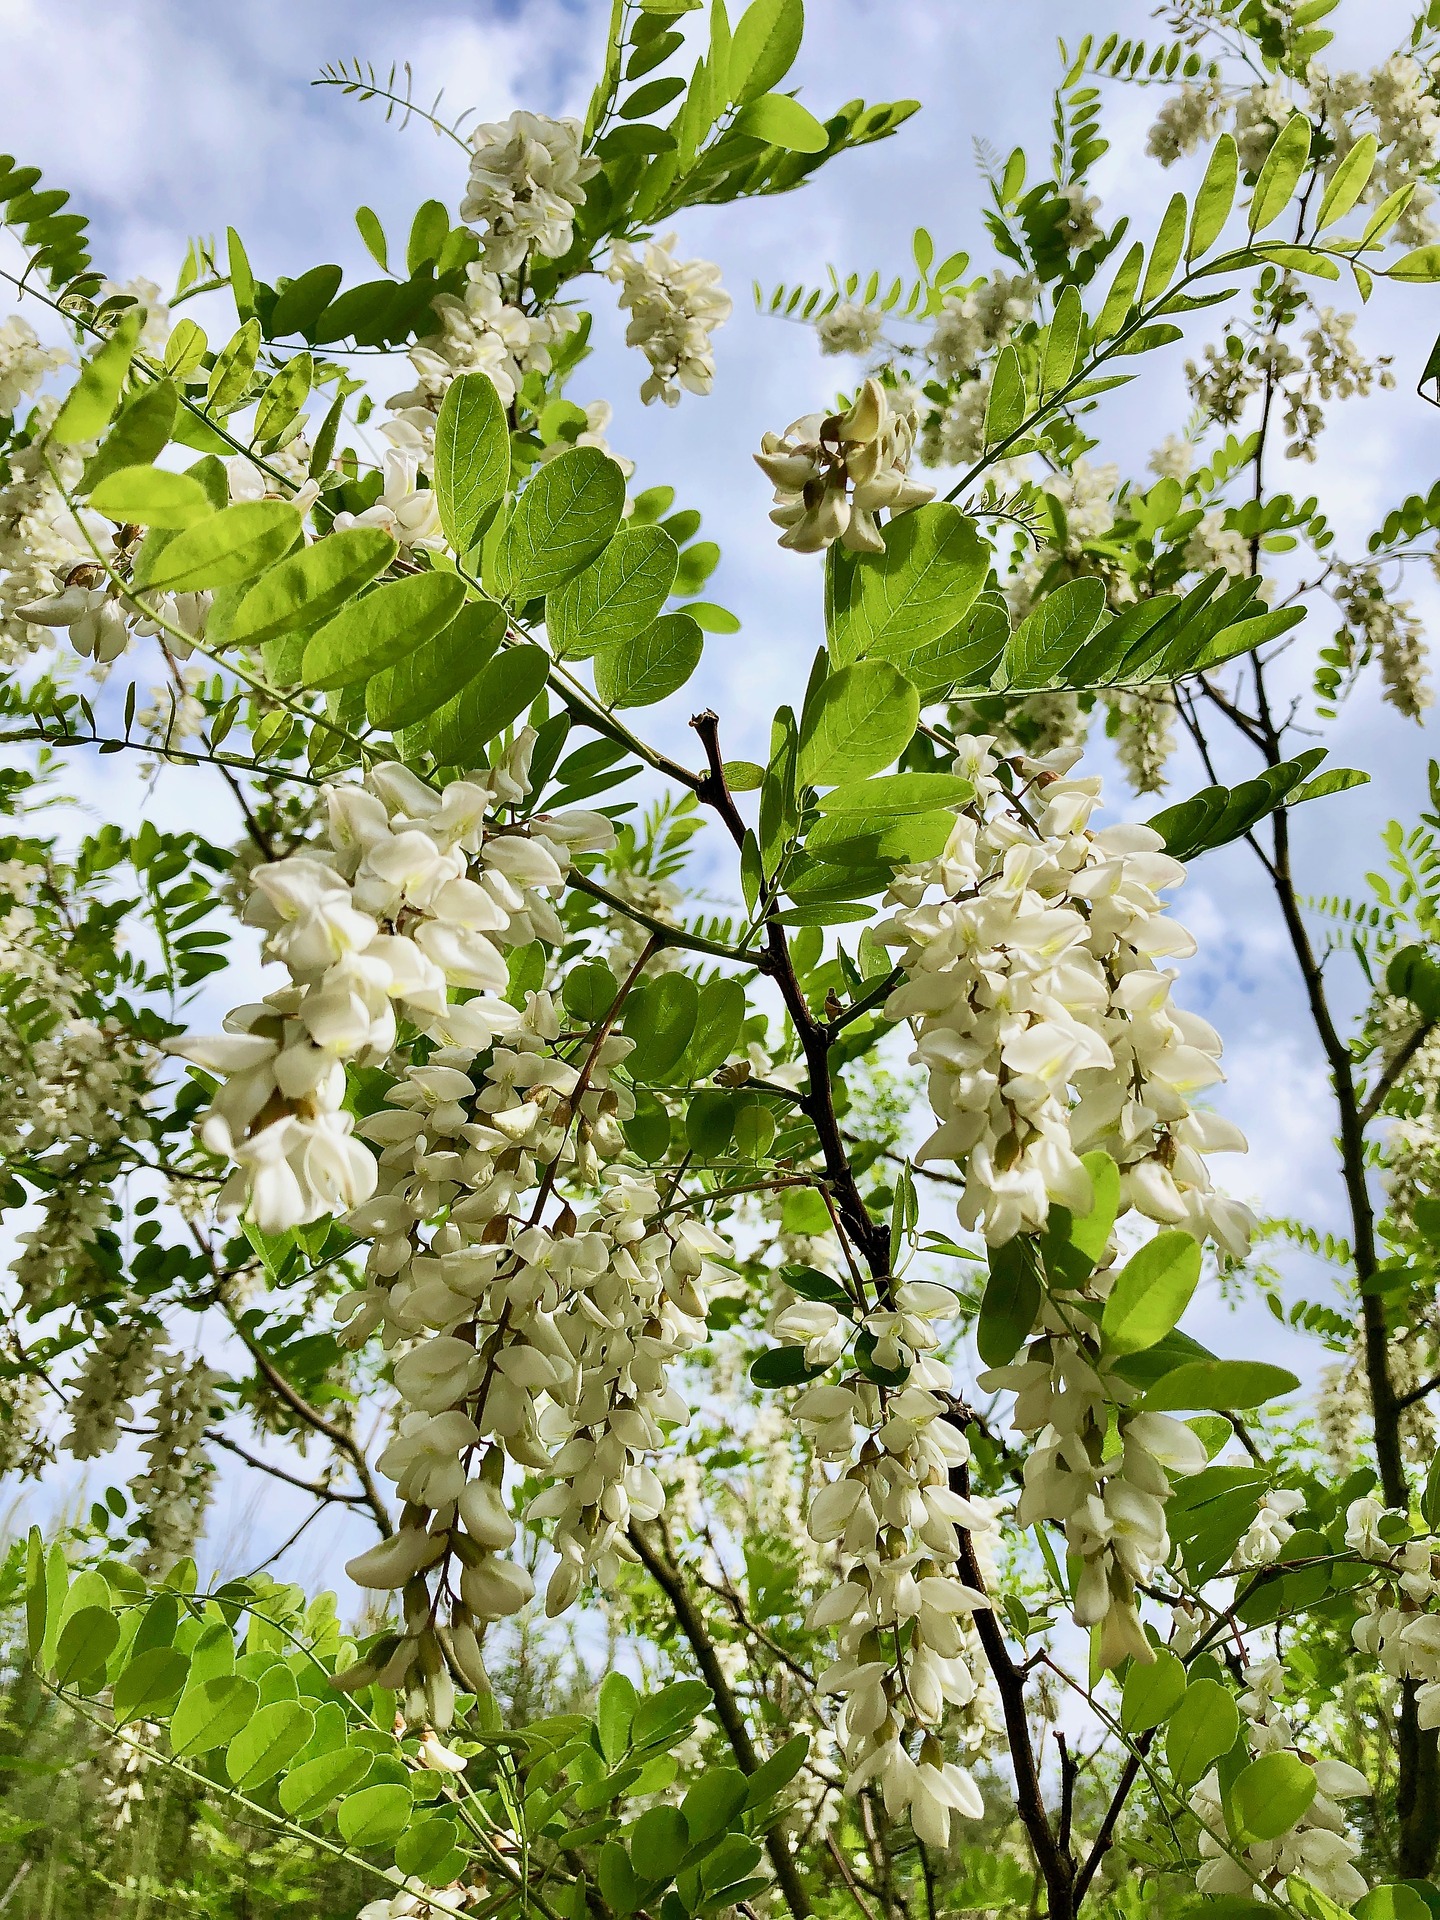 <h1>Květenství trnovníku akátu <i>(Robinia pseudoacacia)</i></h1><br />
Na snímku je zachycen detail větvičky trnovníku s několika převislými hroznovitými květenstvími, která jsou složena z bílých květů.